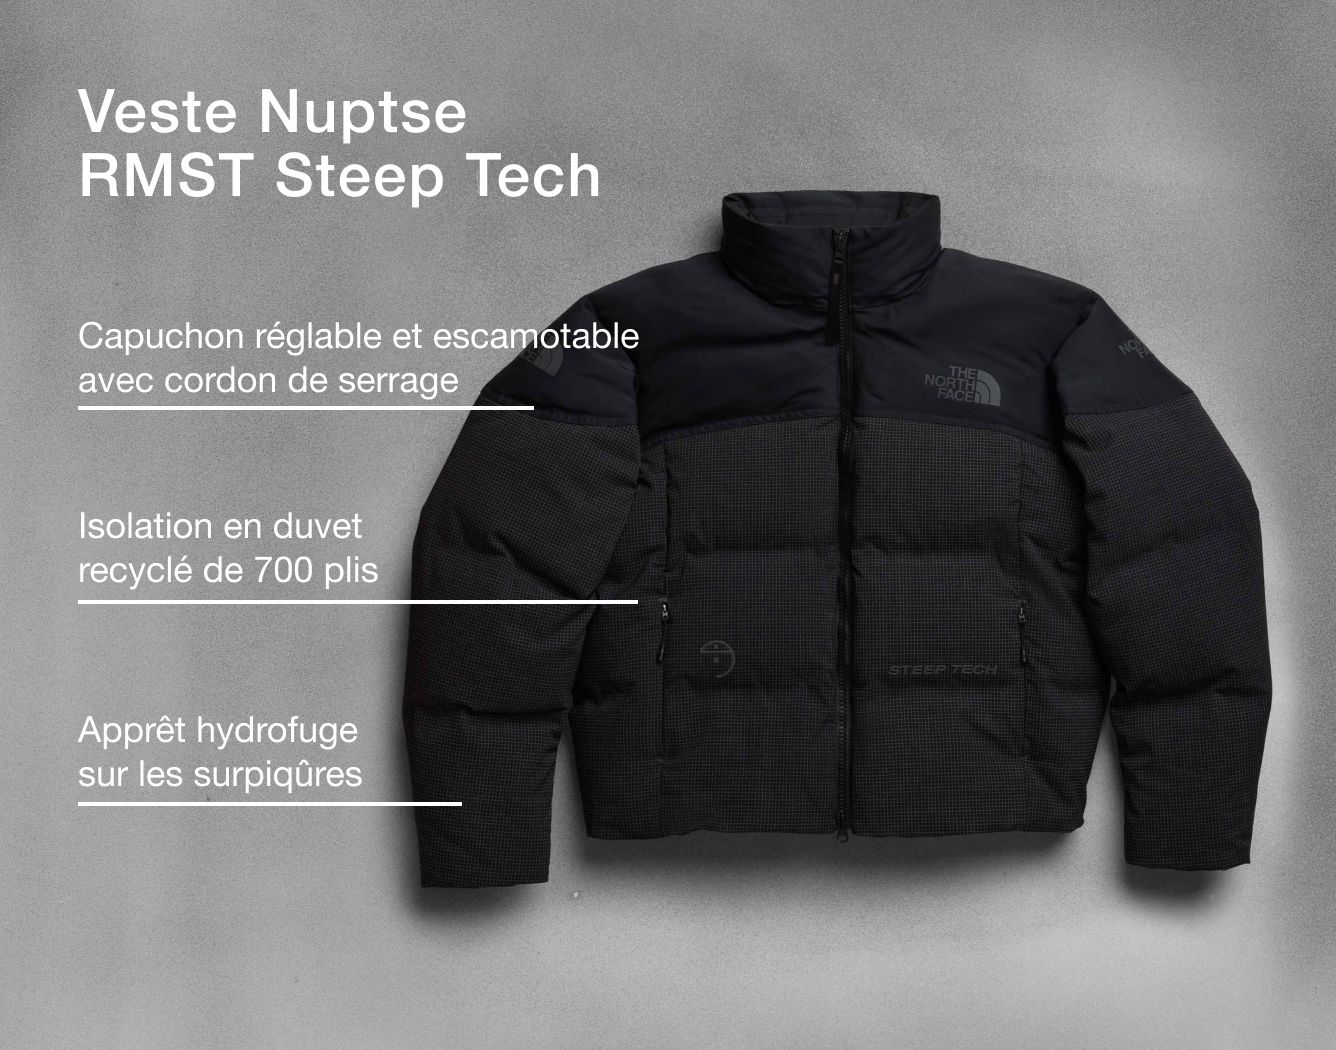 Photo studio de la veste Nuptse RMST Steep Tech avec superposition de texte indiquant la fabrication et l’isolation